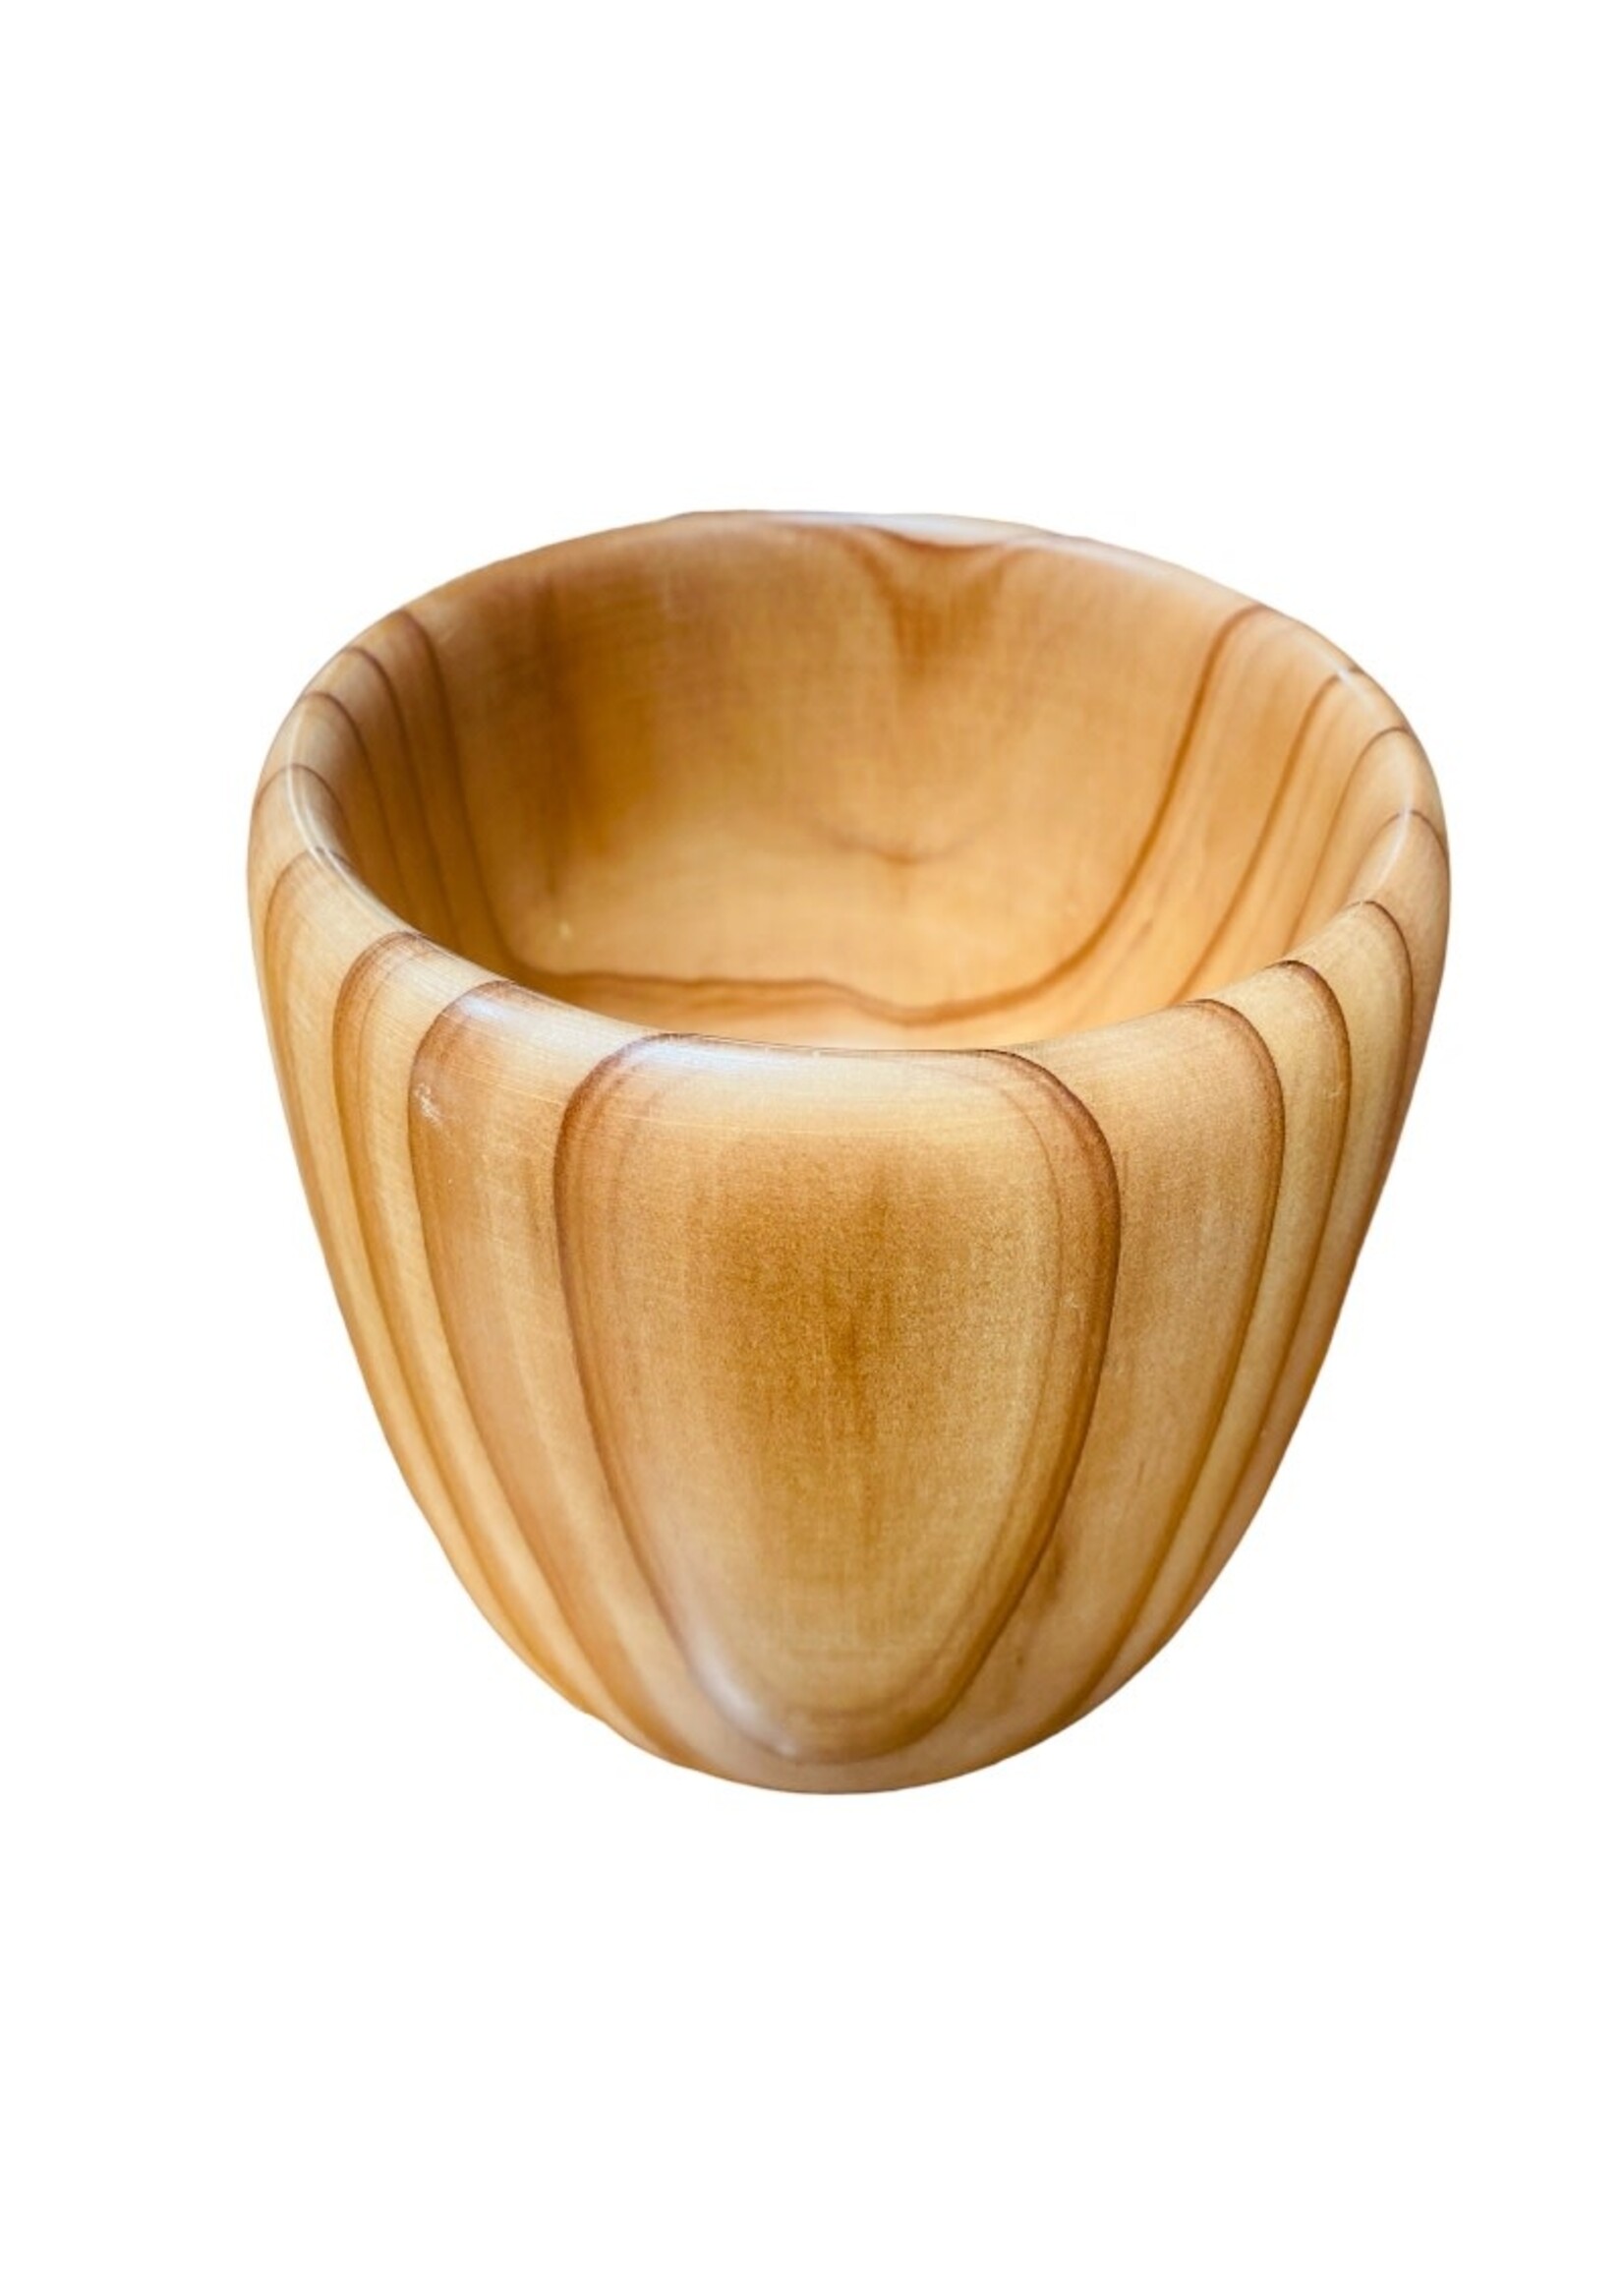 Redwood Bowl (5x5)